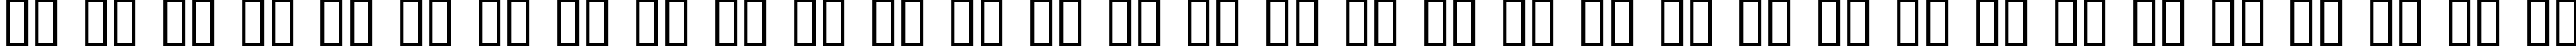 Пример написания русского алфавита шрифтом Dumbledor 3 Shadow